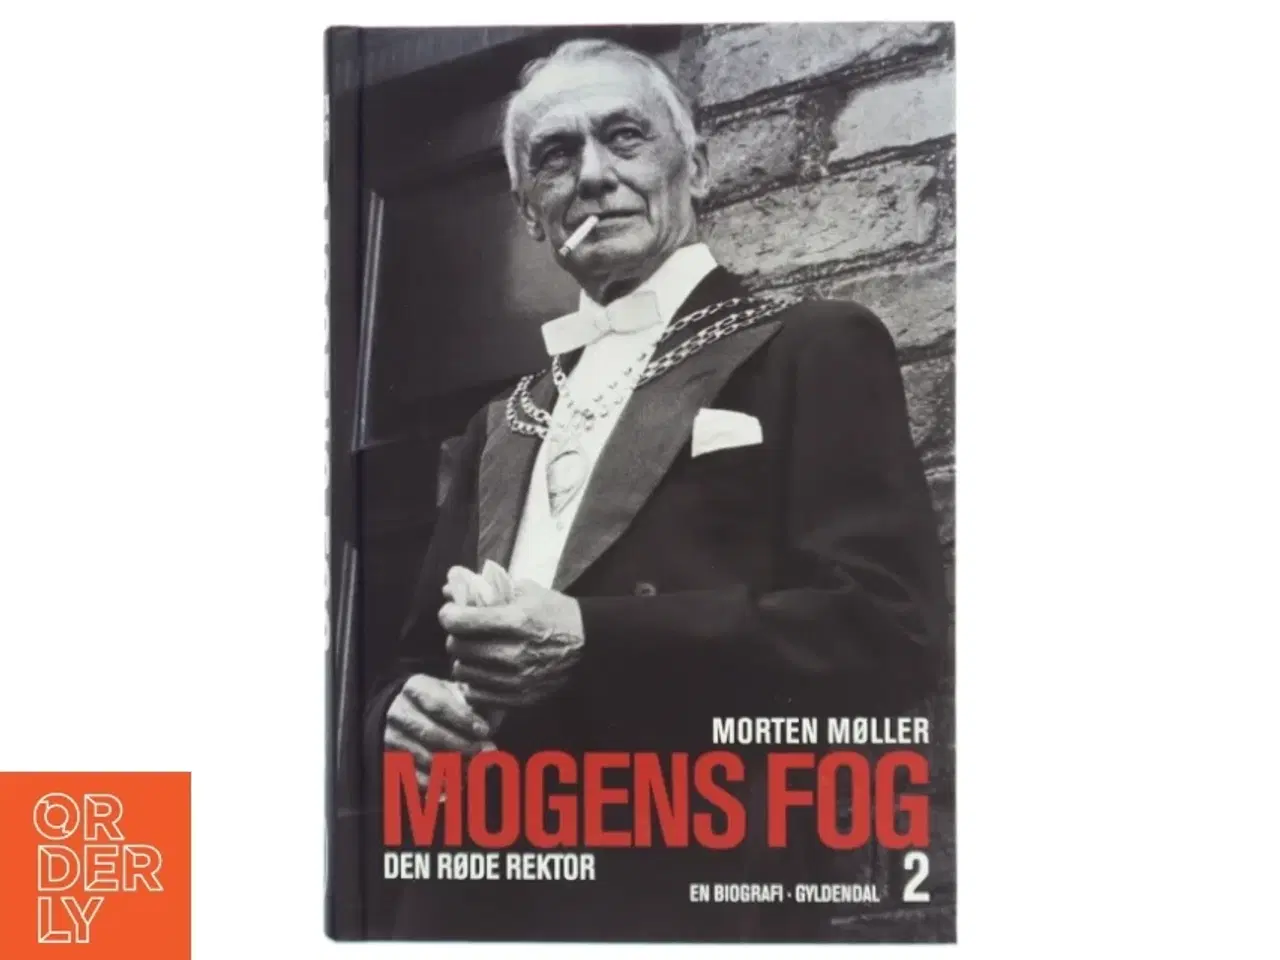 Billede 1 - Mogens Fog : en biografi. 1, Fra modstandshelt til landsforræder af Morten Møller (f. 1978) (Bog)